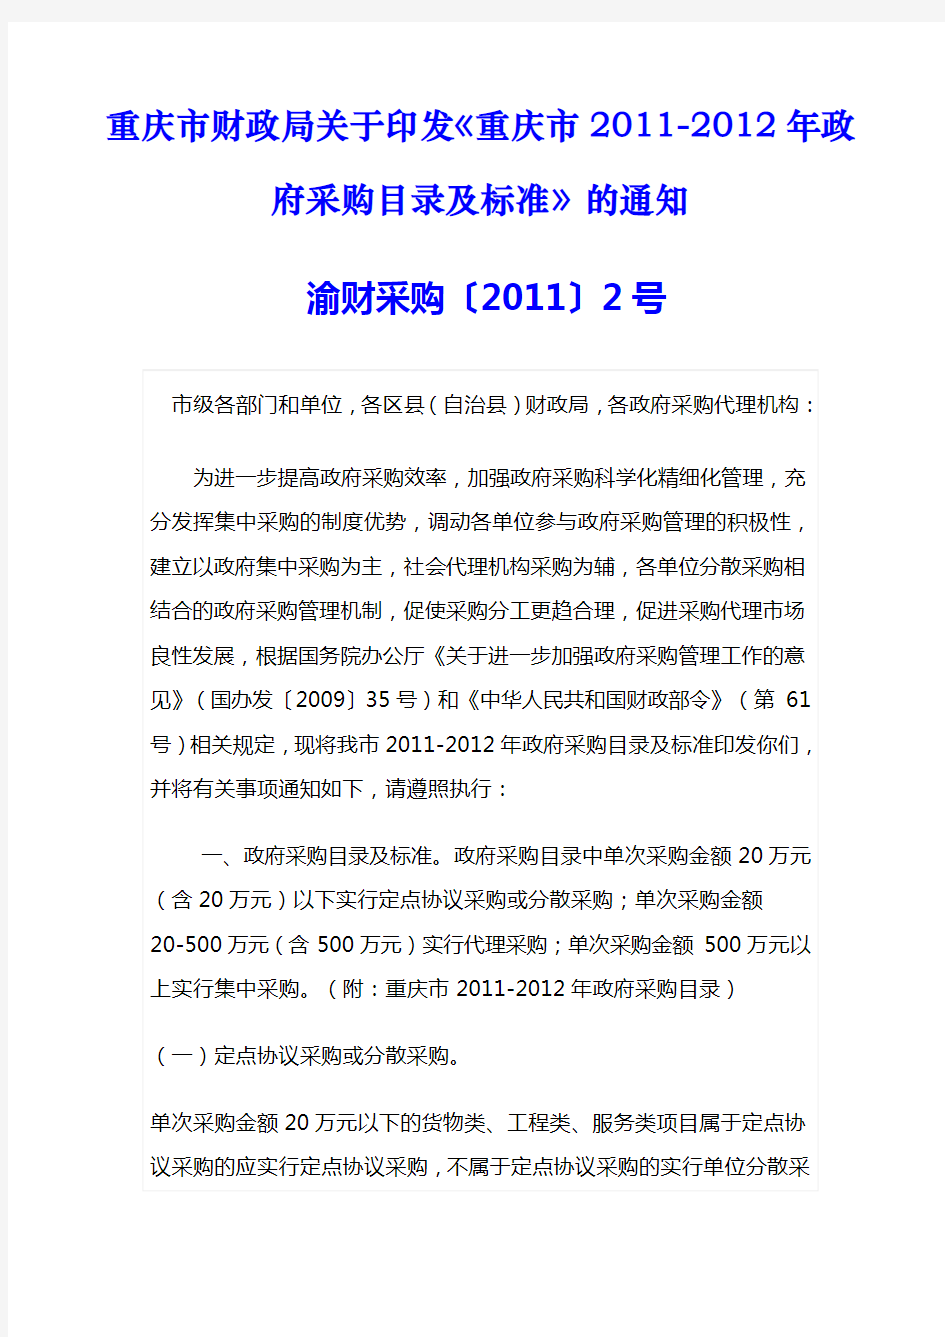 《重庆市2011-2012年政府采购目录及标准》渝财采购〔2011〕2号